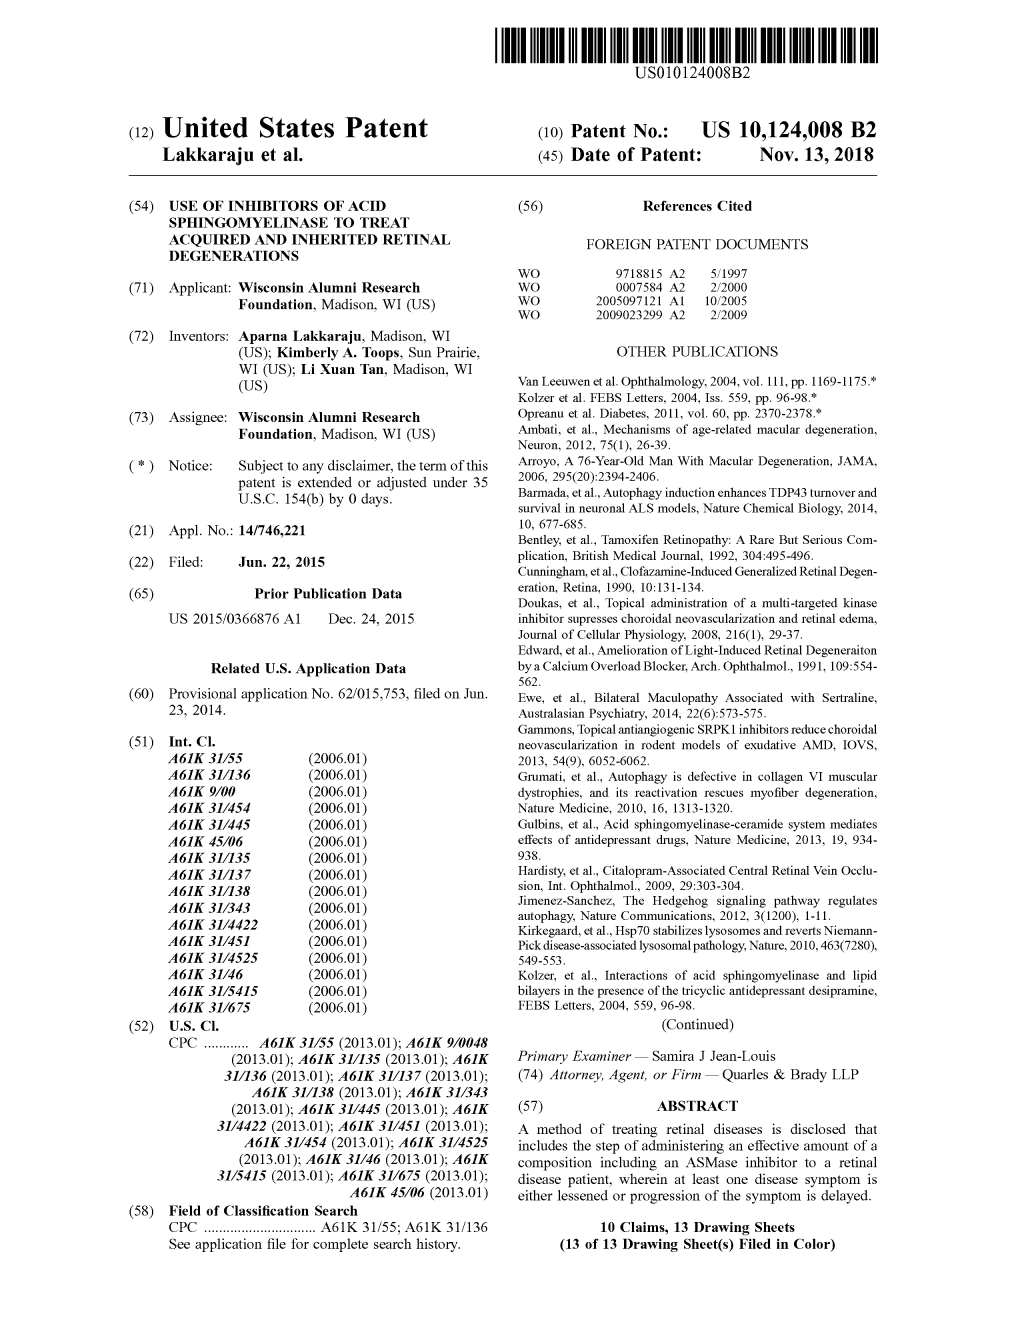 View U.S. Patent No. 10124008 in PDF